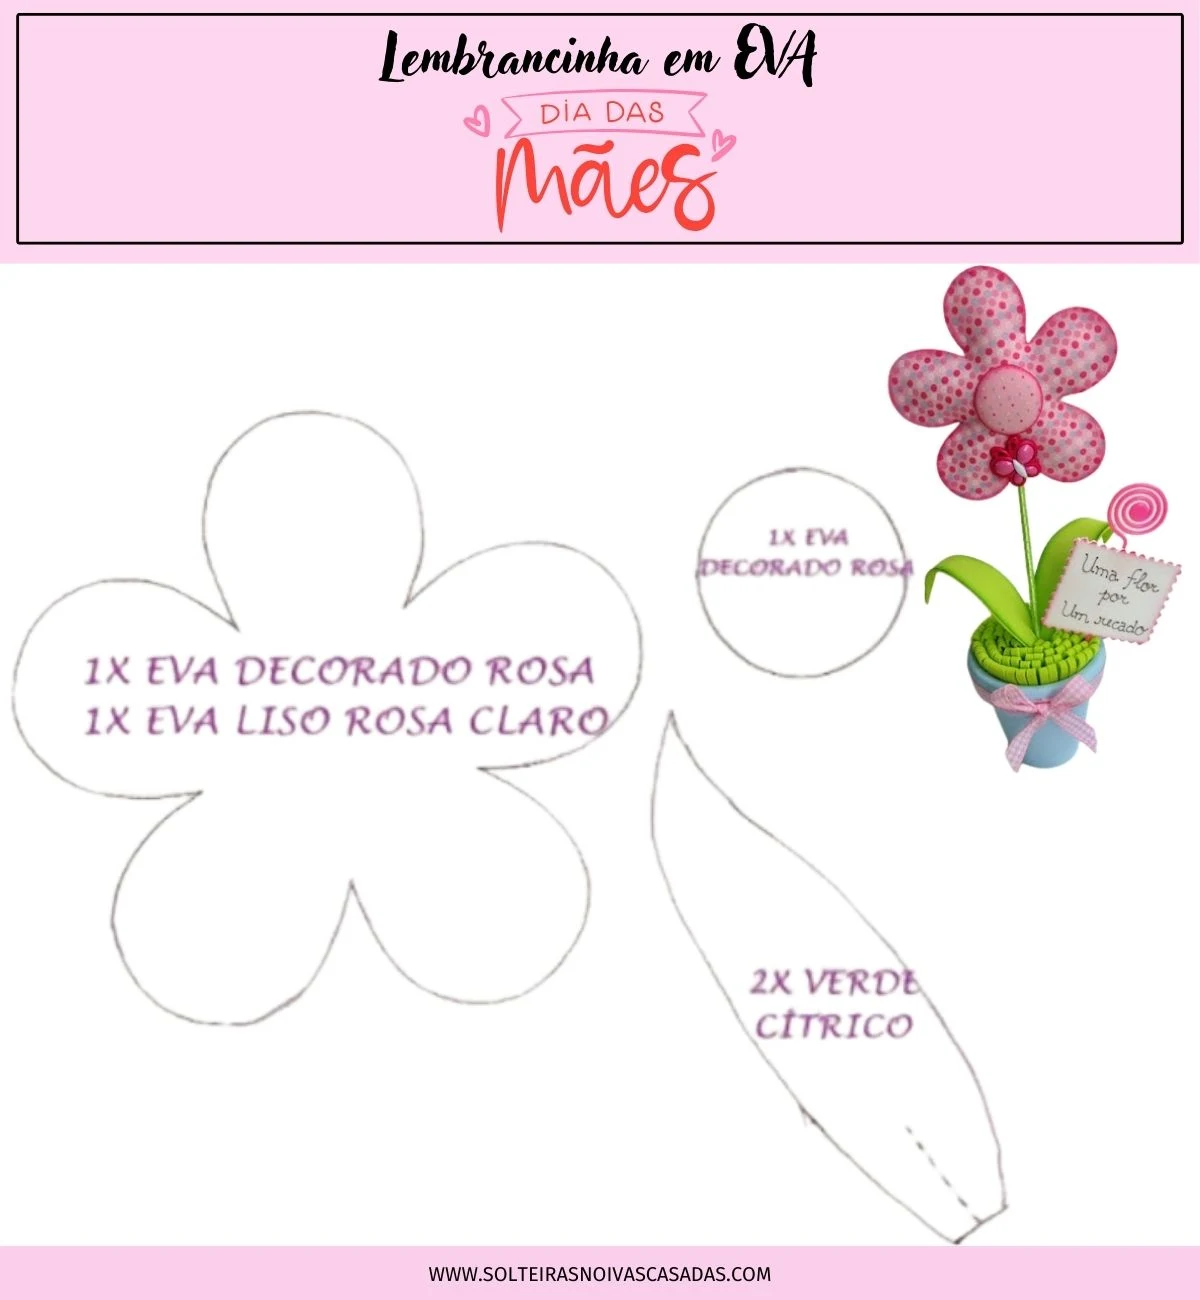 Molde de Lembrancinha em EVA para o Dia das Mães de Vaso com Flor e Recado